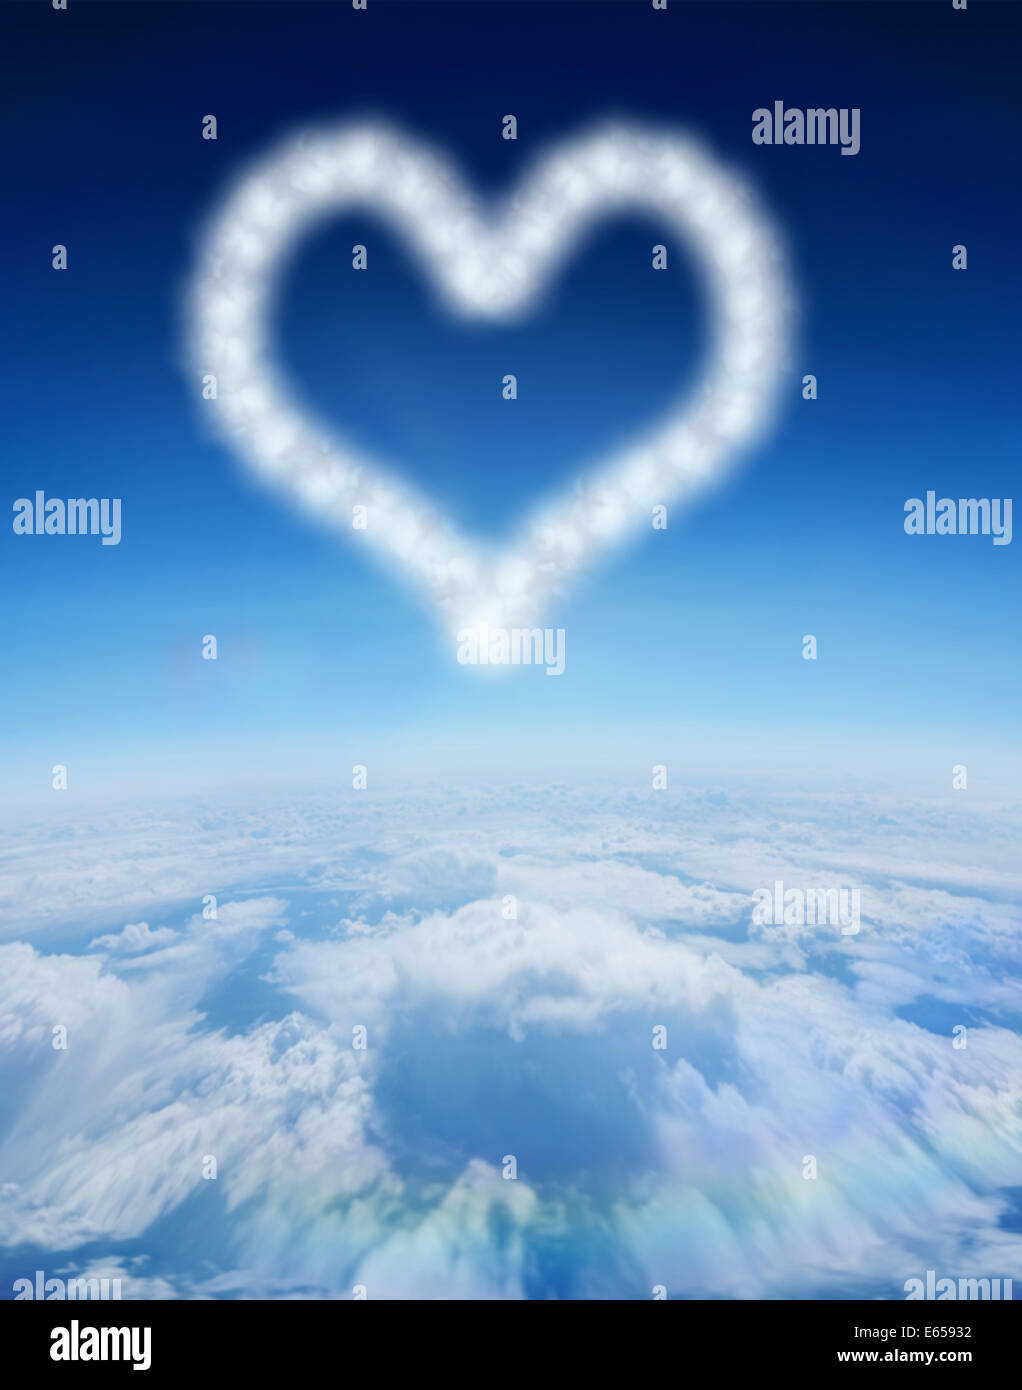 Zusammengesetztes Bild der Wolke in Form von Herzen Stockfoto